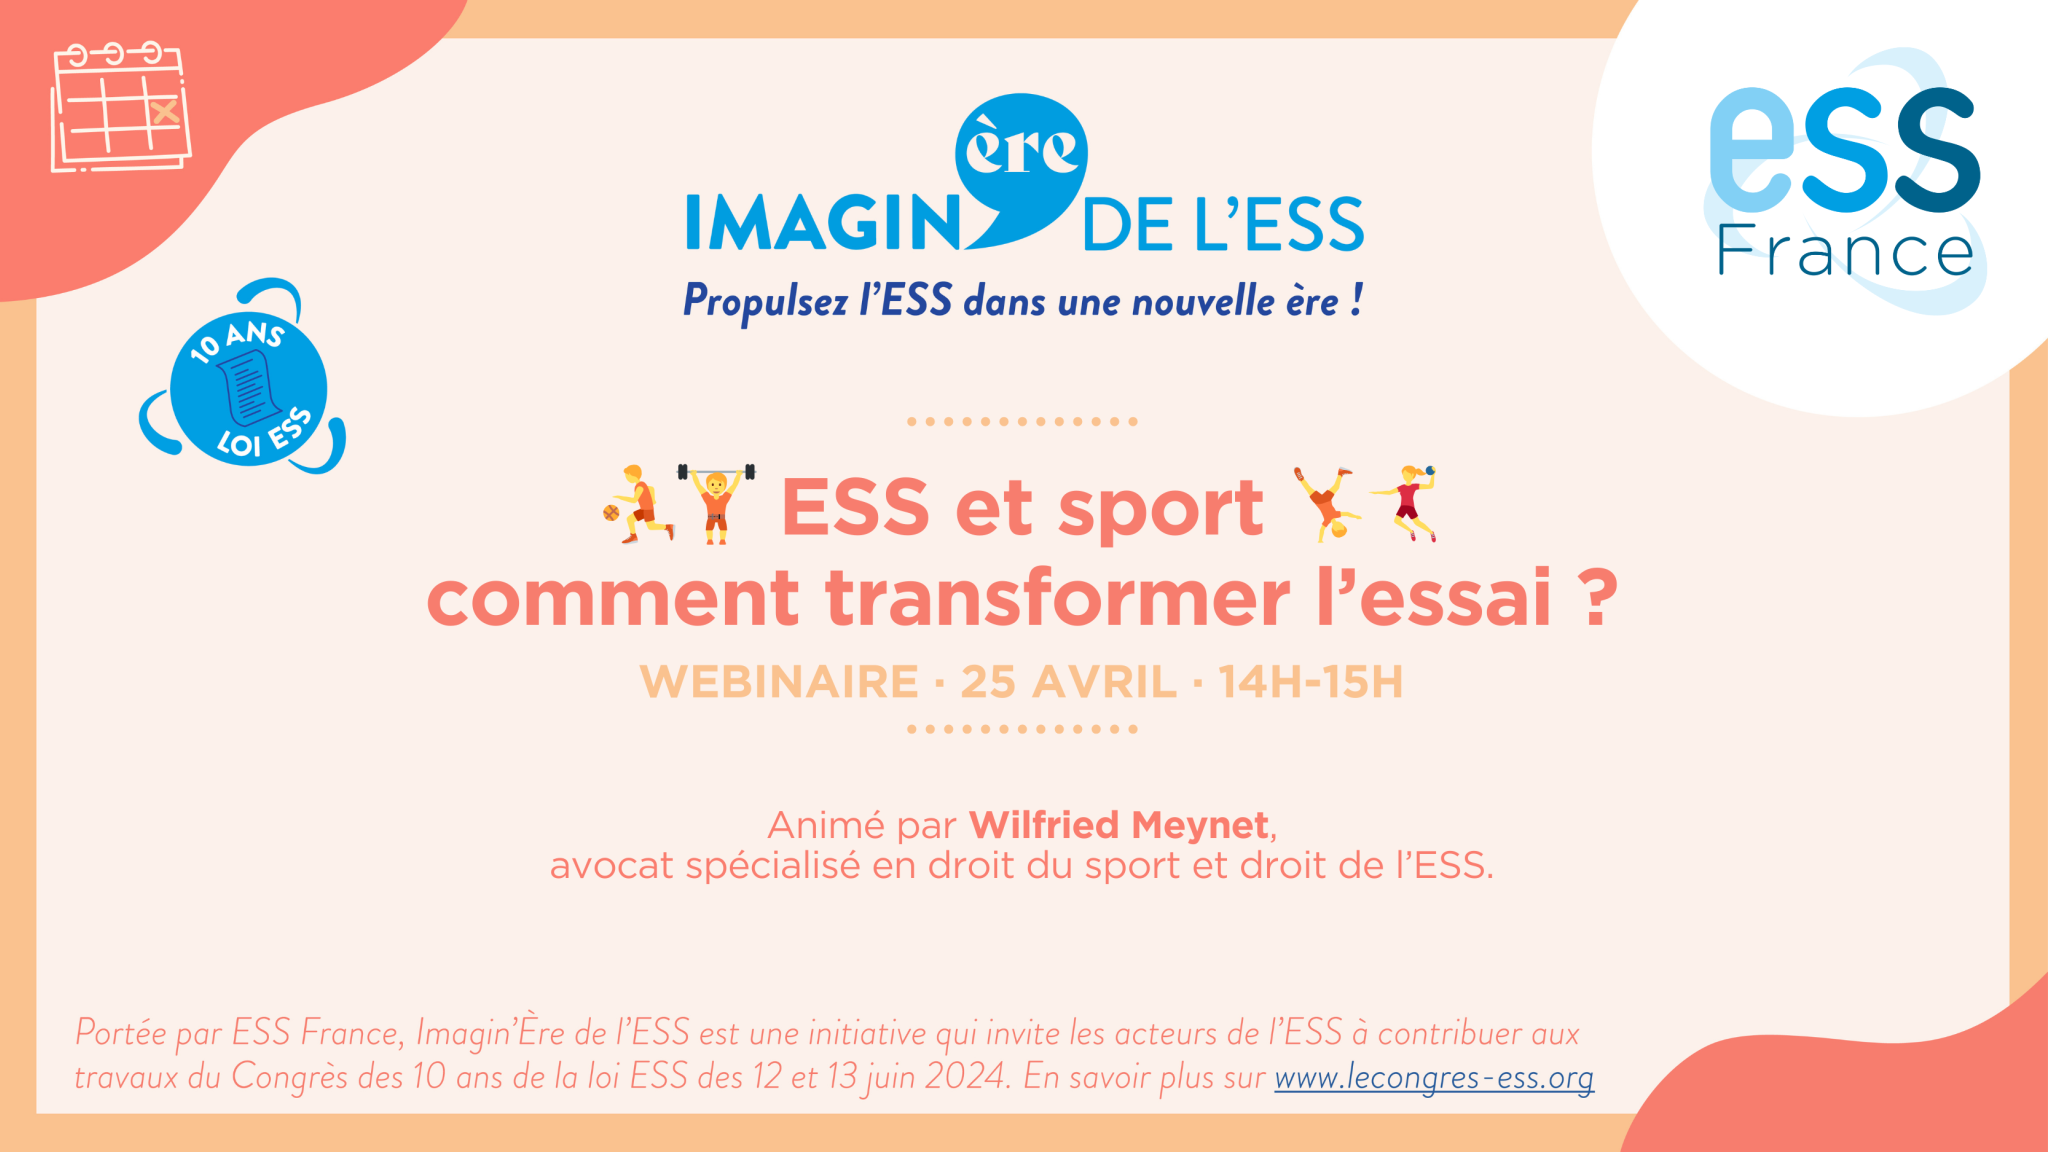 ESS et sport : comment transformer l'essai ? Webinaire d'ESS France le 25 avril dans le cadre d'Imagin'Ère de l'ESS